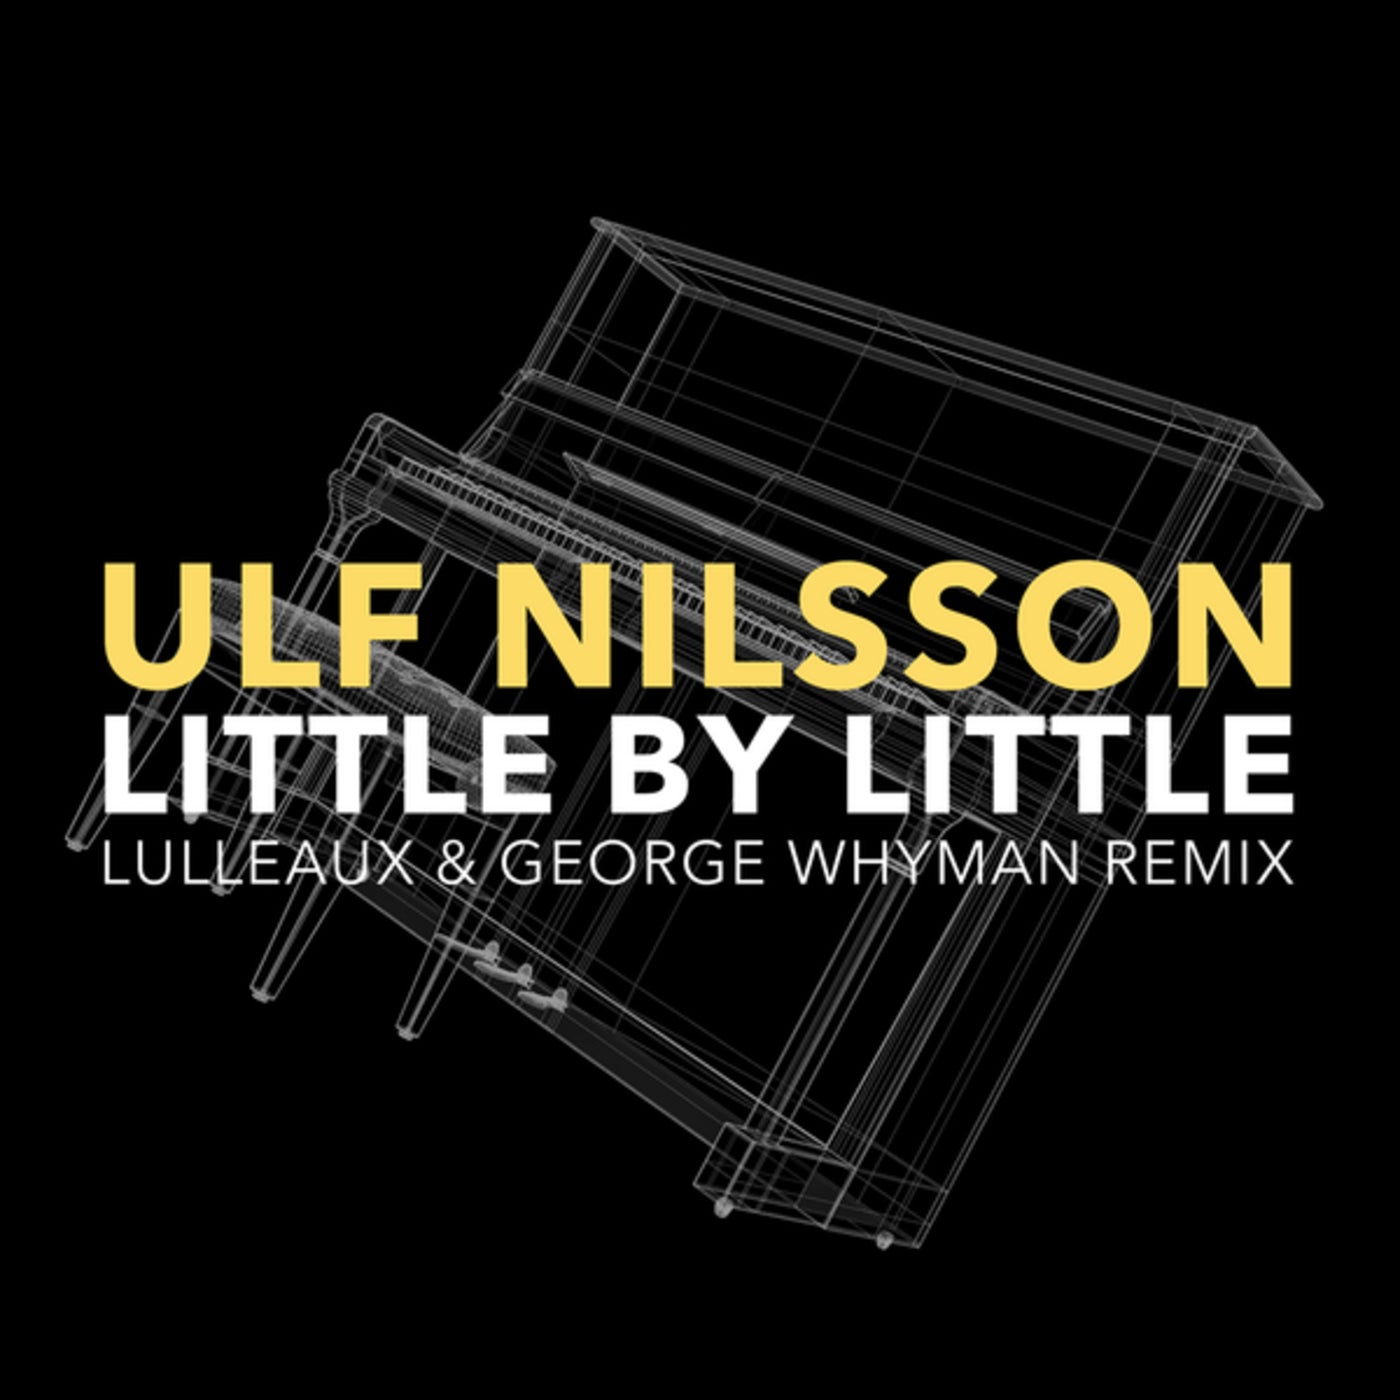 Little by little lulleaux george whyman remix long ferrari lego